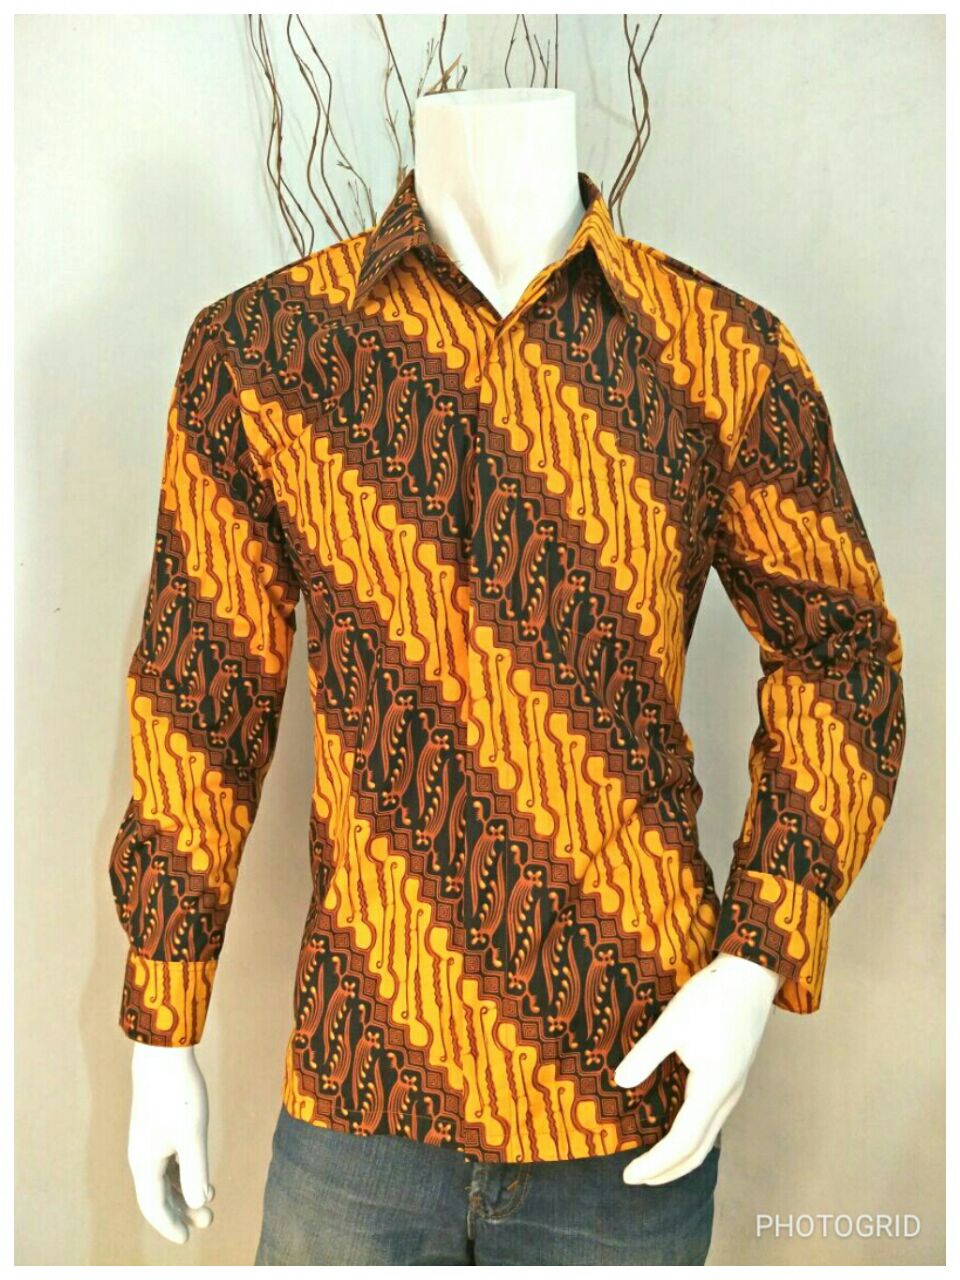 Contoh Model Baju Batik 2020 Kemeja Batik Kombinasi Pria 